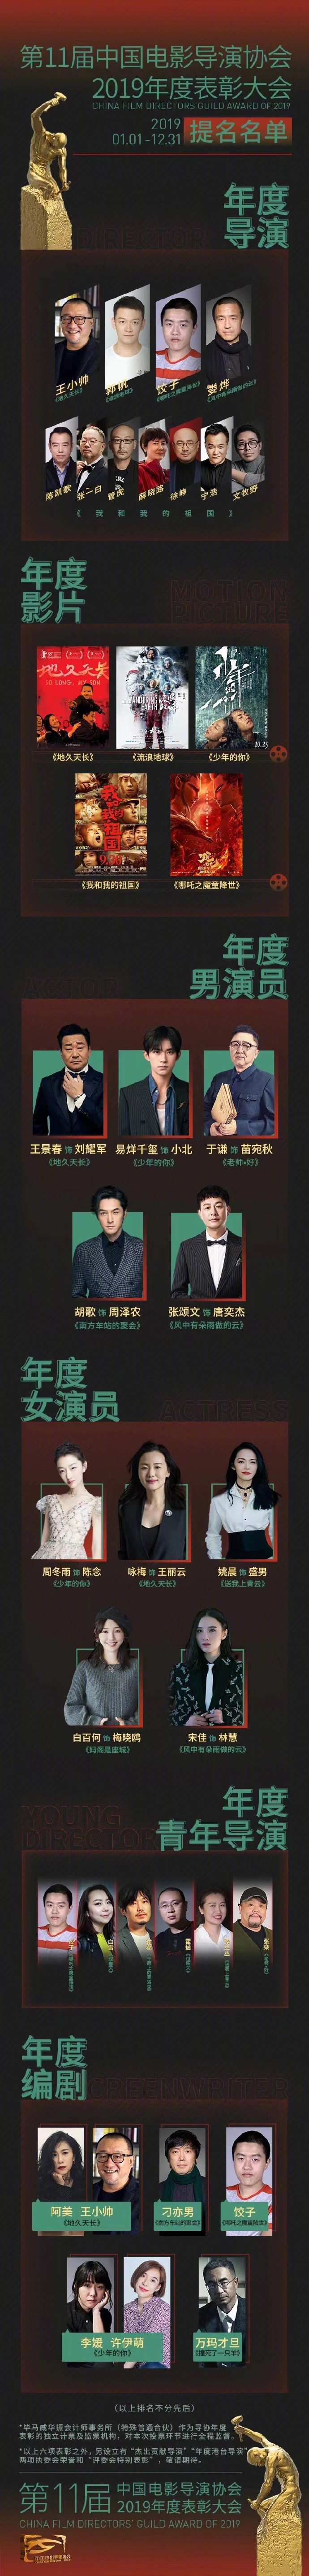 11届中国电影导演协会提名名单公布 易烊千玺角逐年度男演员